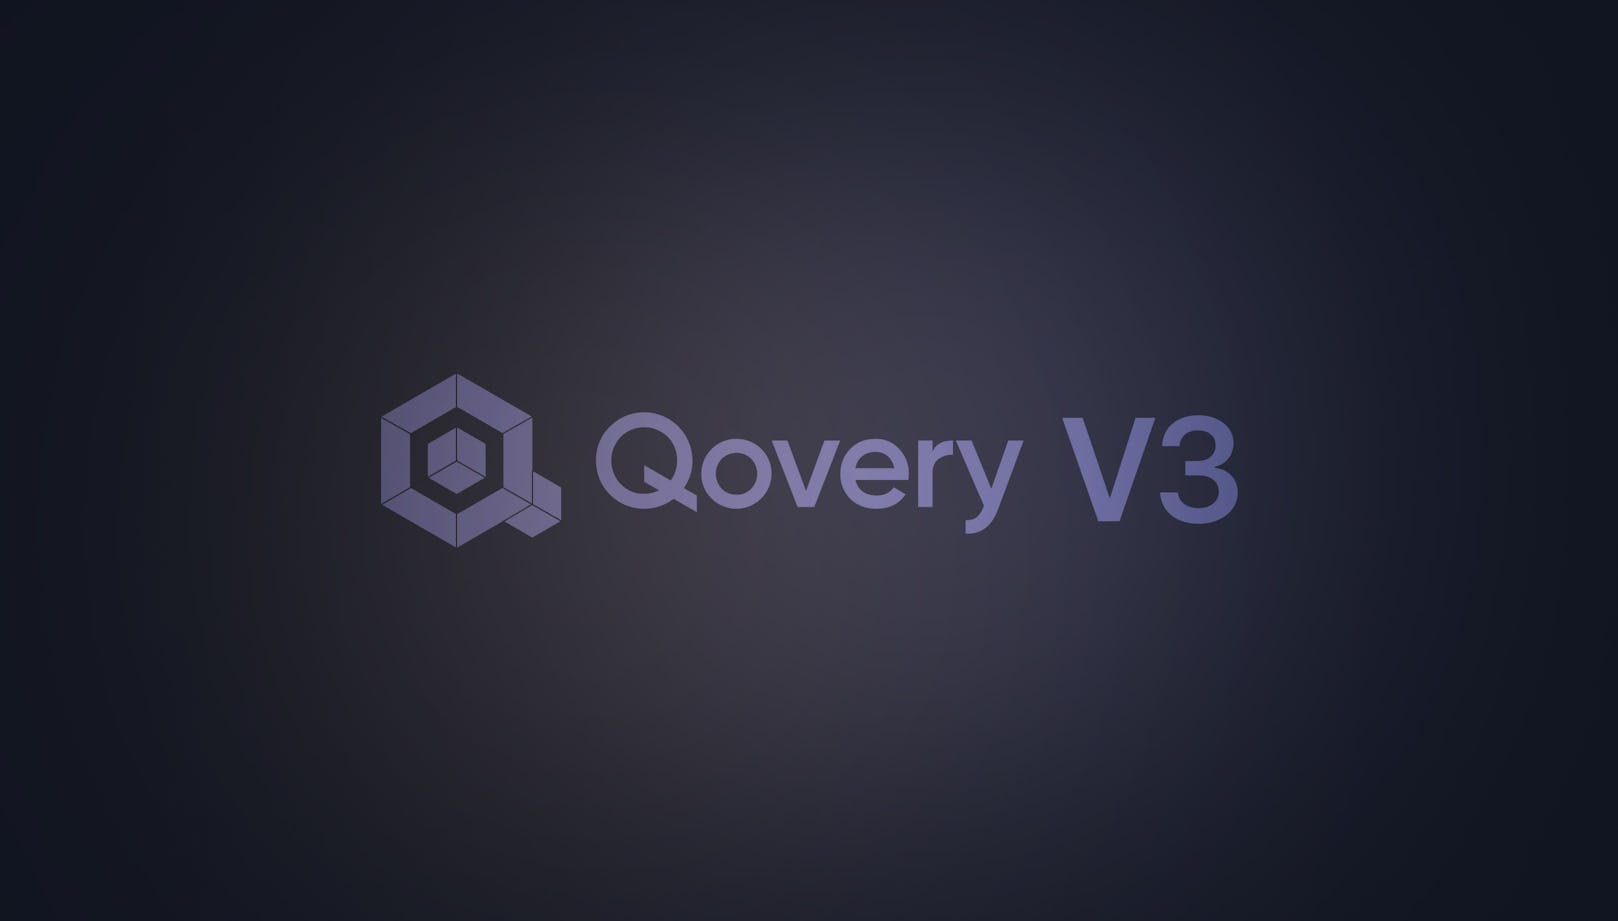 Qovery V3 is Here - Qovery